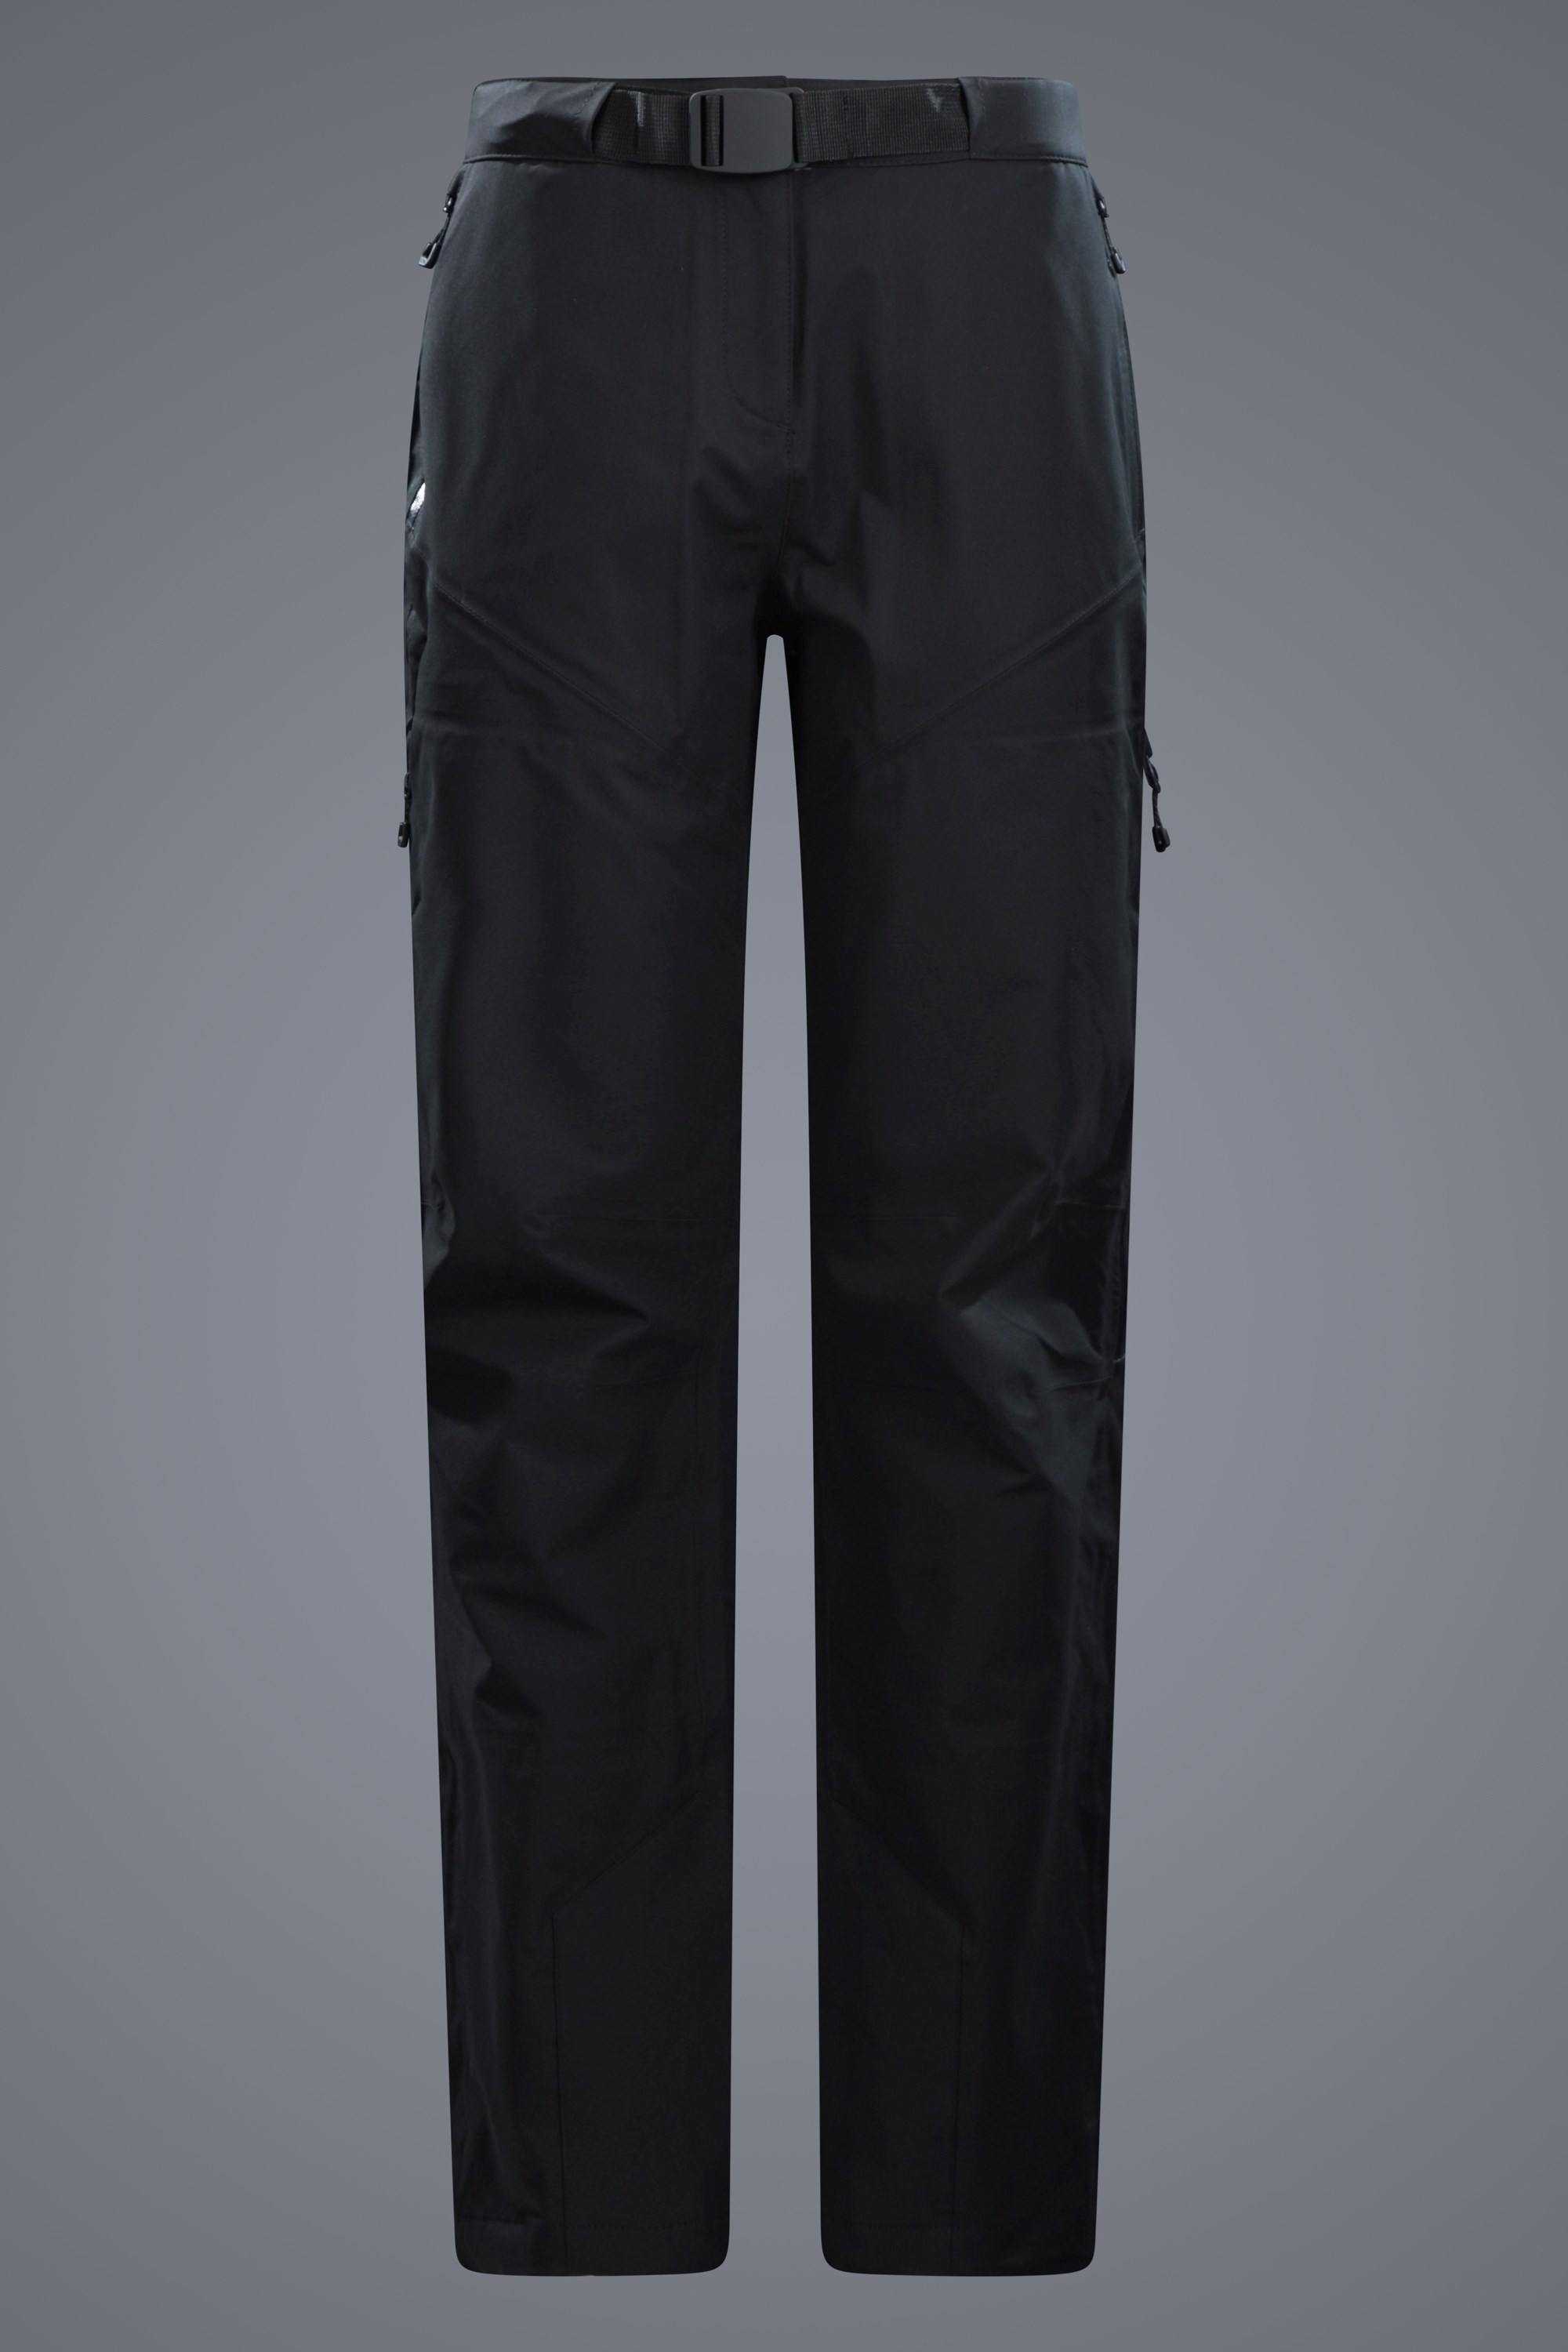 Women's Waterproof Pants  Waterproof Trousers for Women's Online